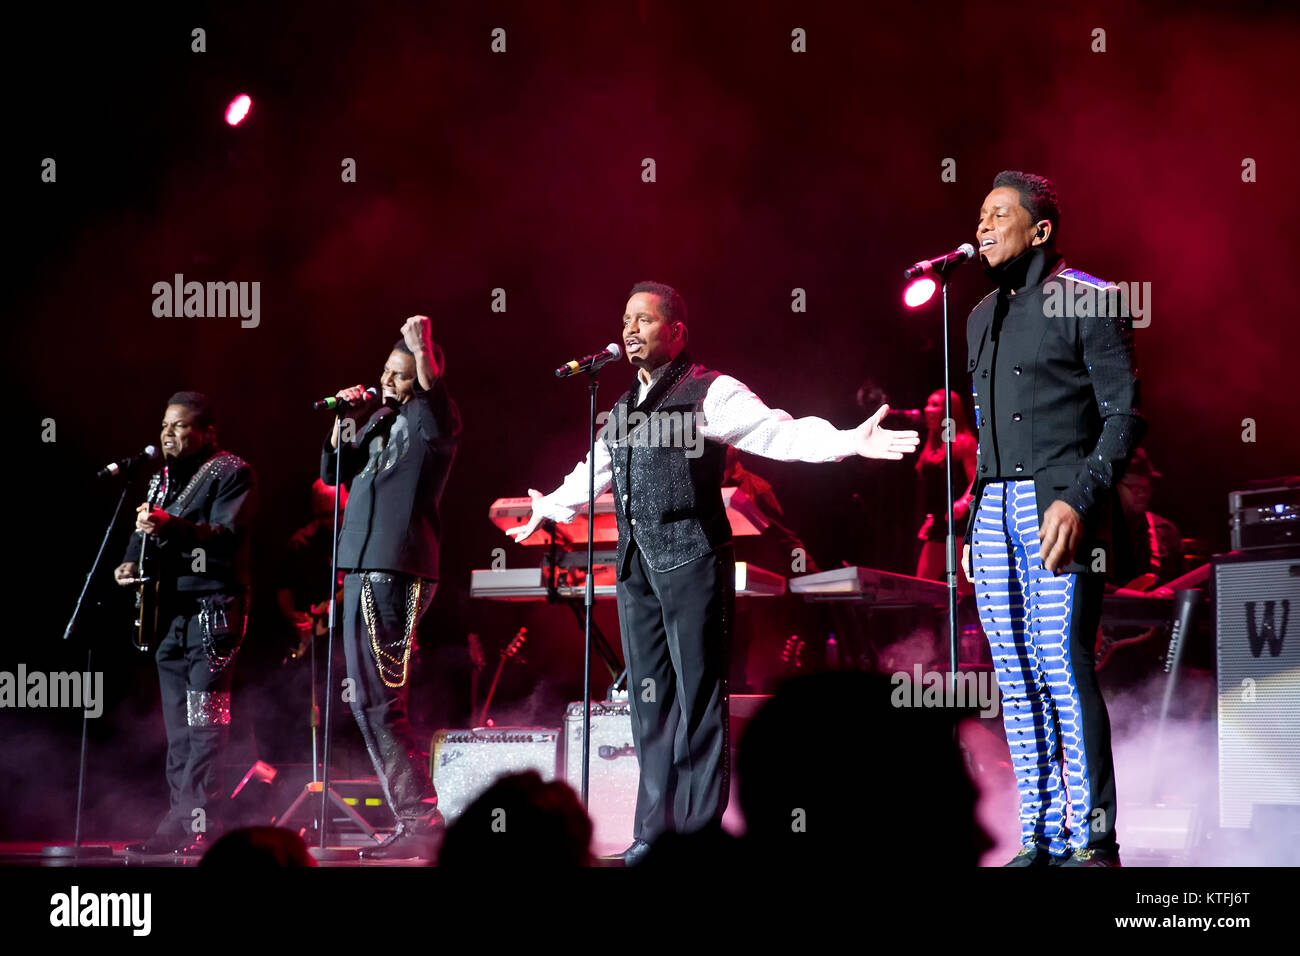 Die amerikanische Familie, die Gruppe der Jackson 5 führt ein Live Konzert in Oslo Spektrum als Teil der Einheit Tour 2012/2013. Die Gruppe besteht aus den Brüdern Jackie, Tito, Marlon und Jermaine Jackson. Norwegen, 21/02 2013. Stockfoto